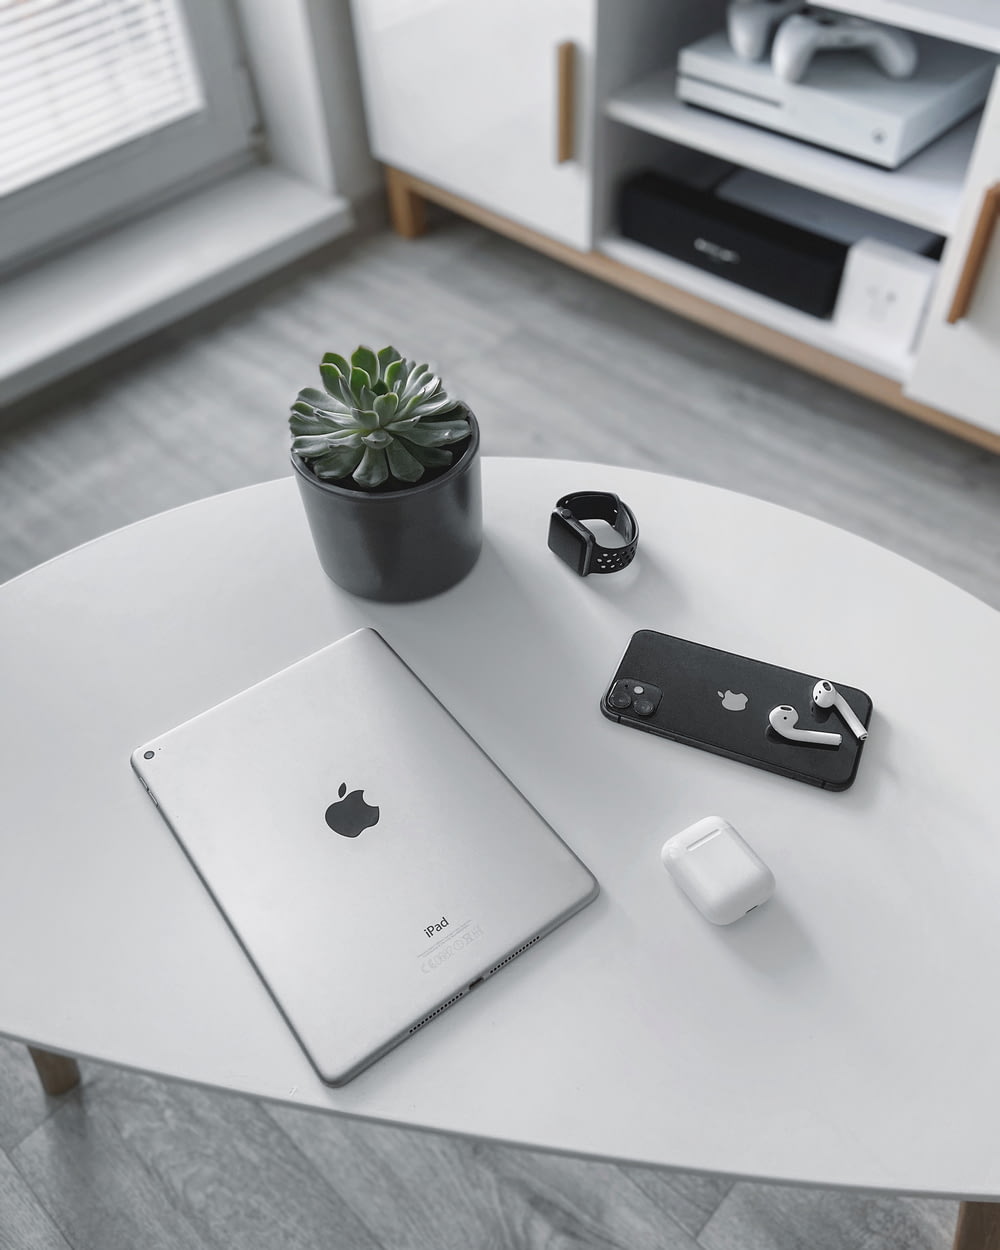 MacBook argenté à côté de la souris magique Apple blanche et de la plante verte sur une table blanche